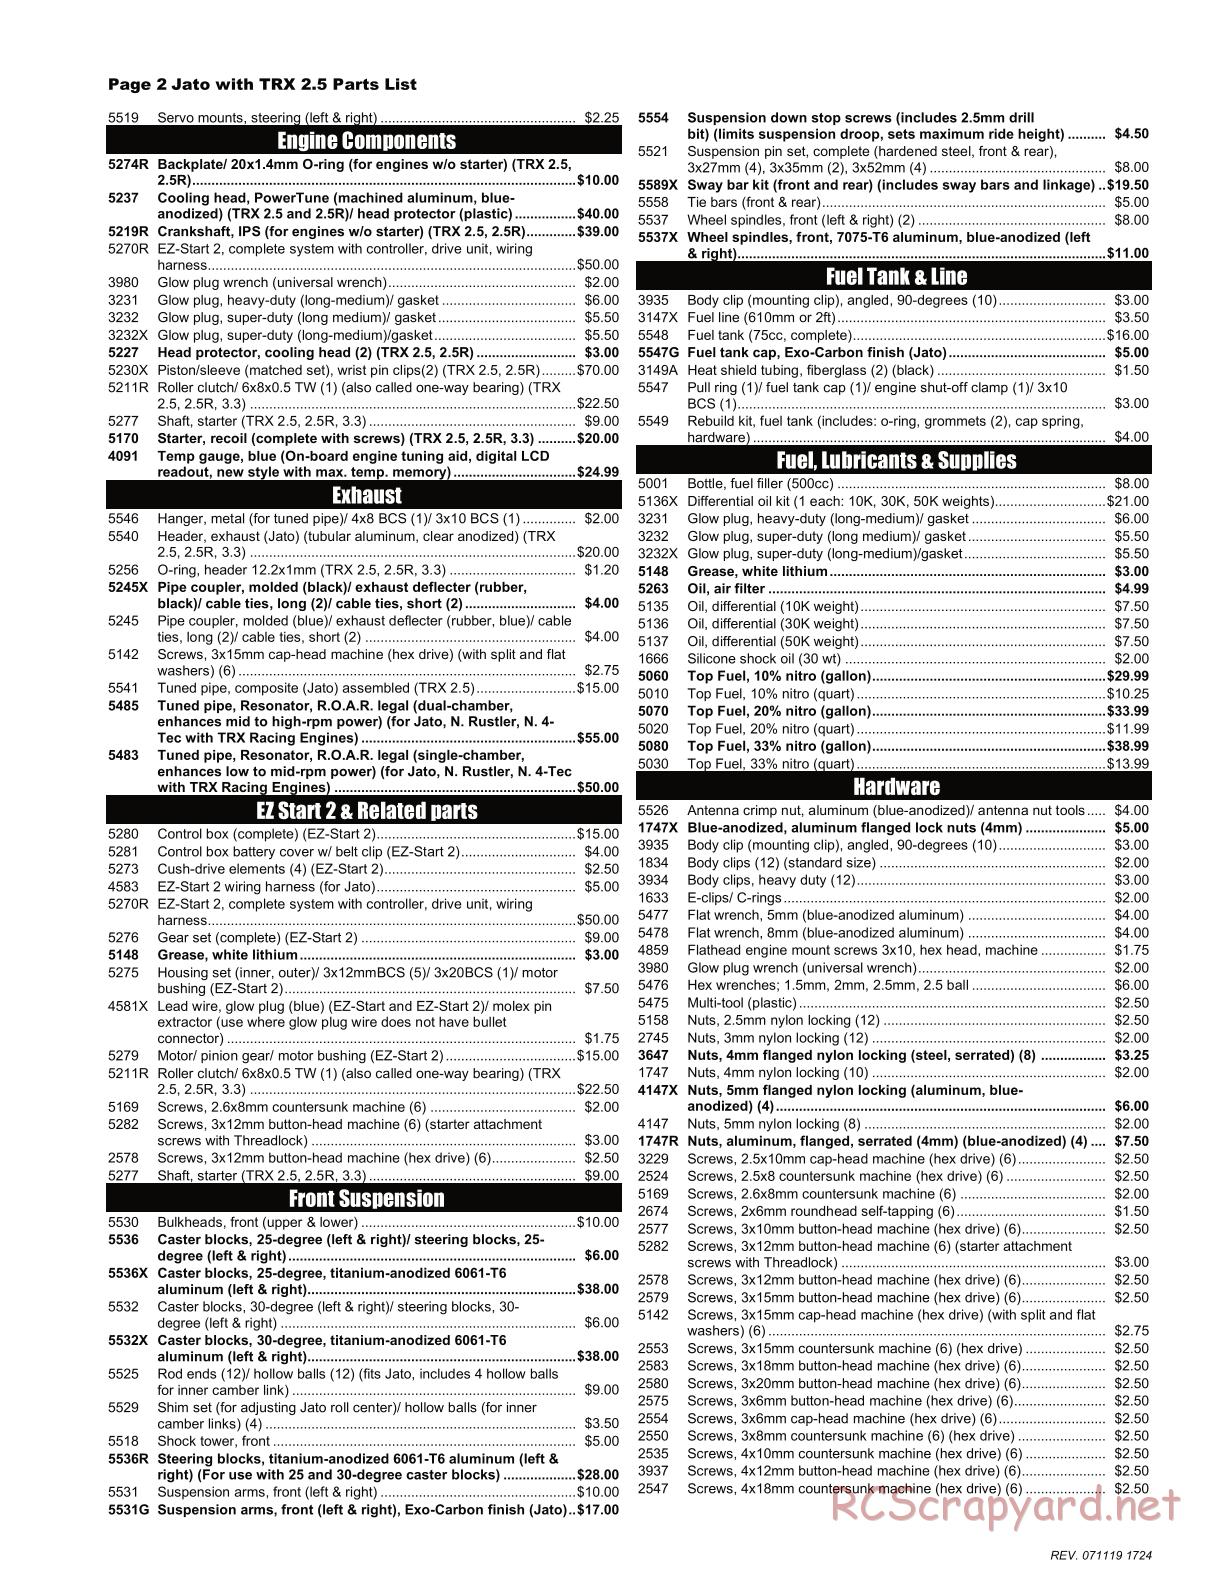 Traxxas - Jato 2.5 (2005) - Parts List - Page 2